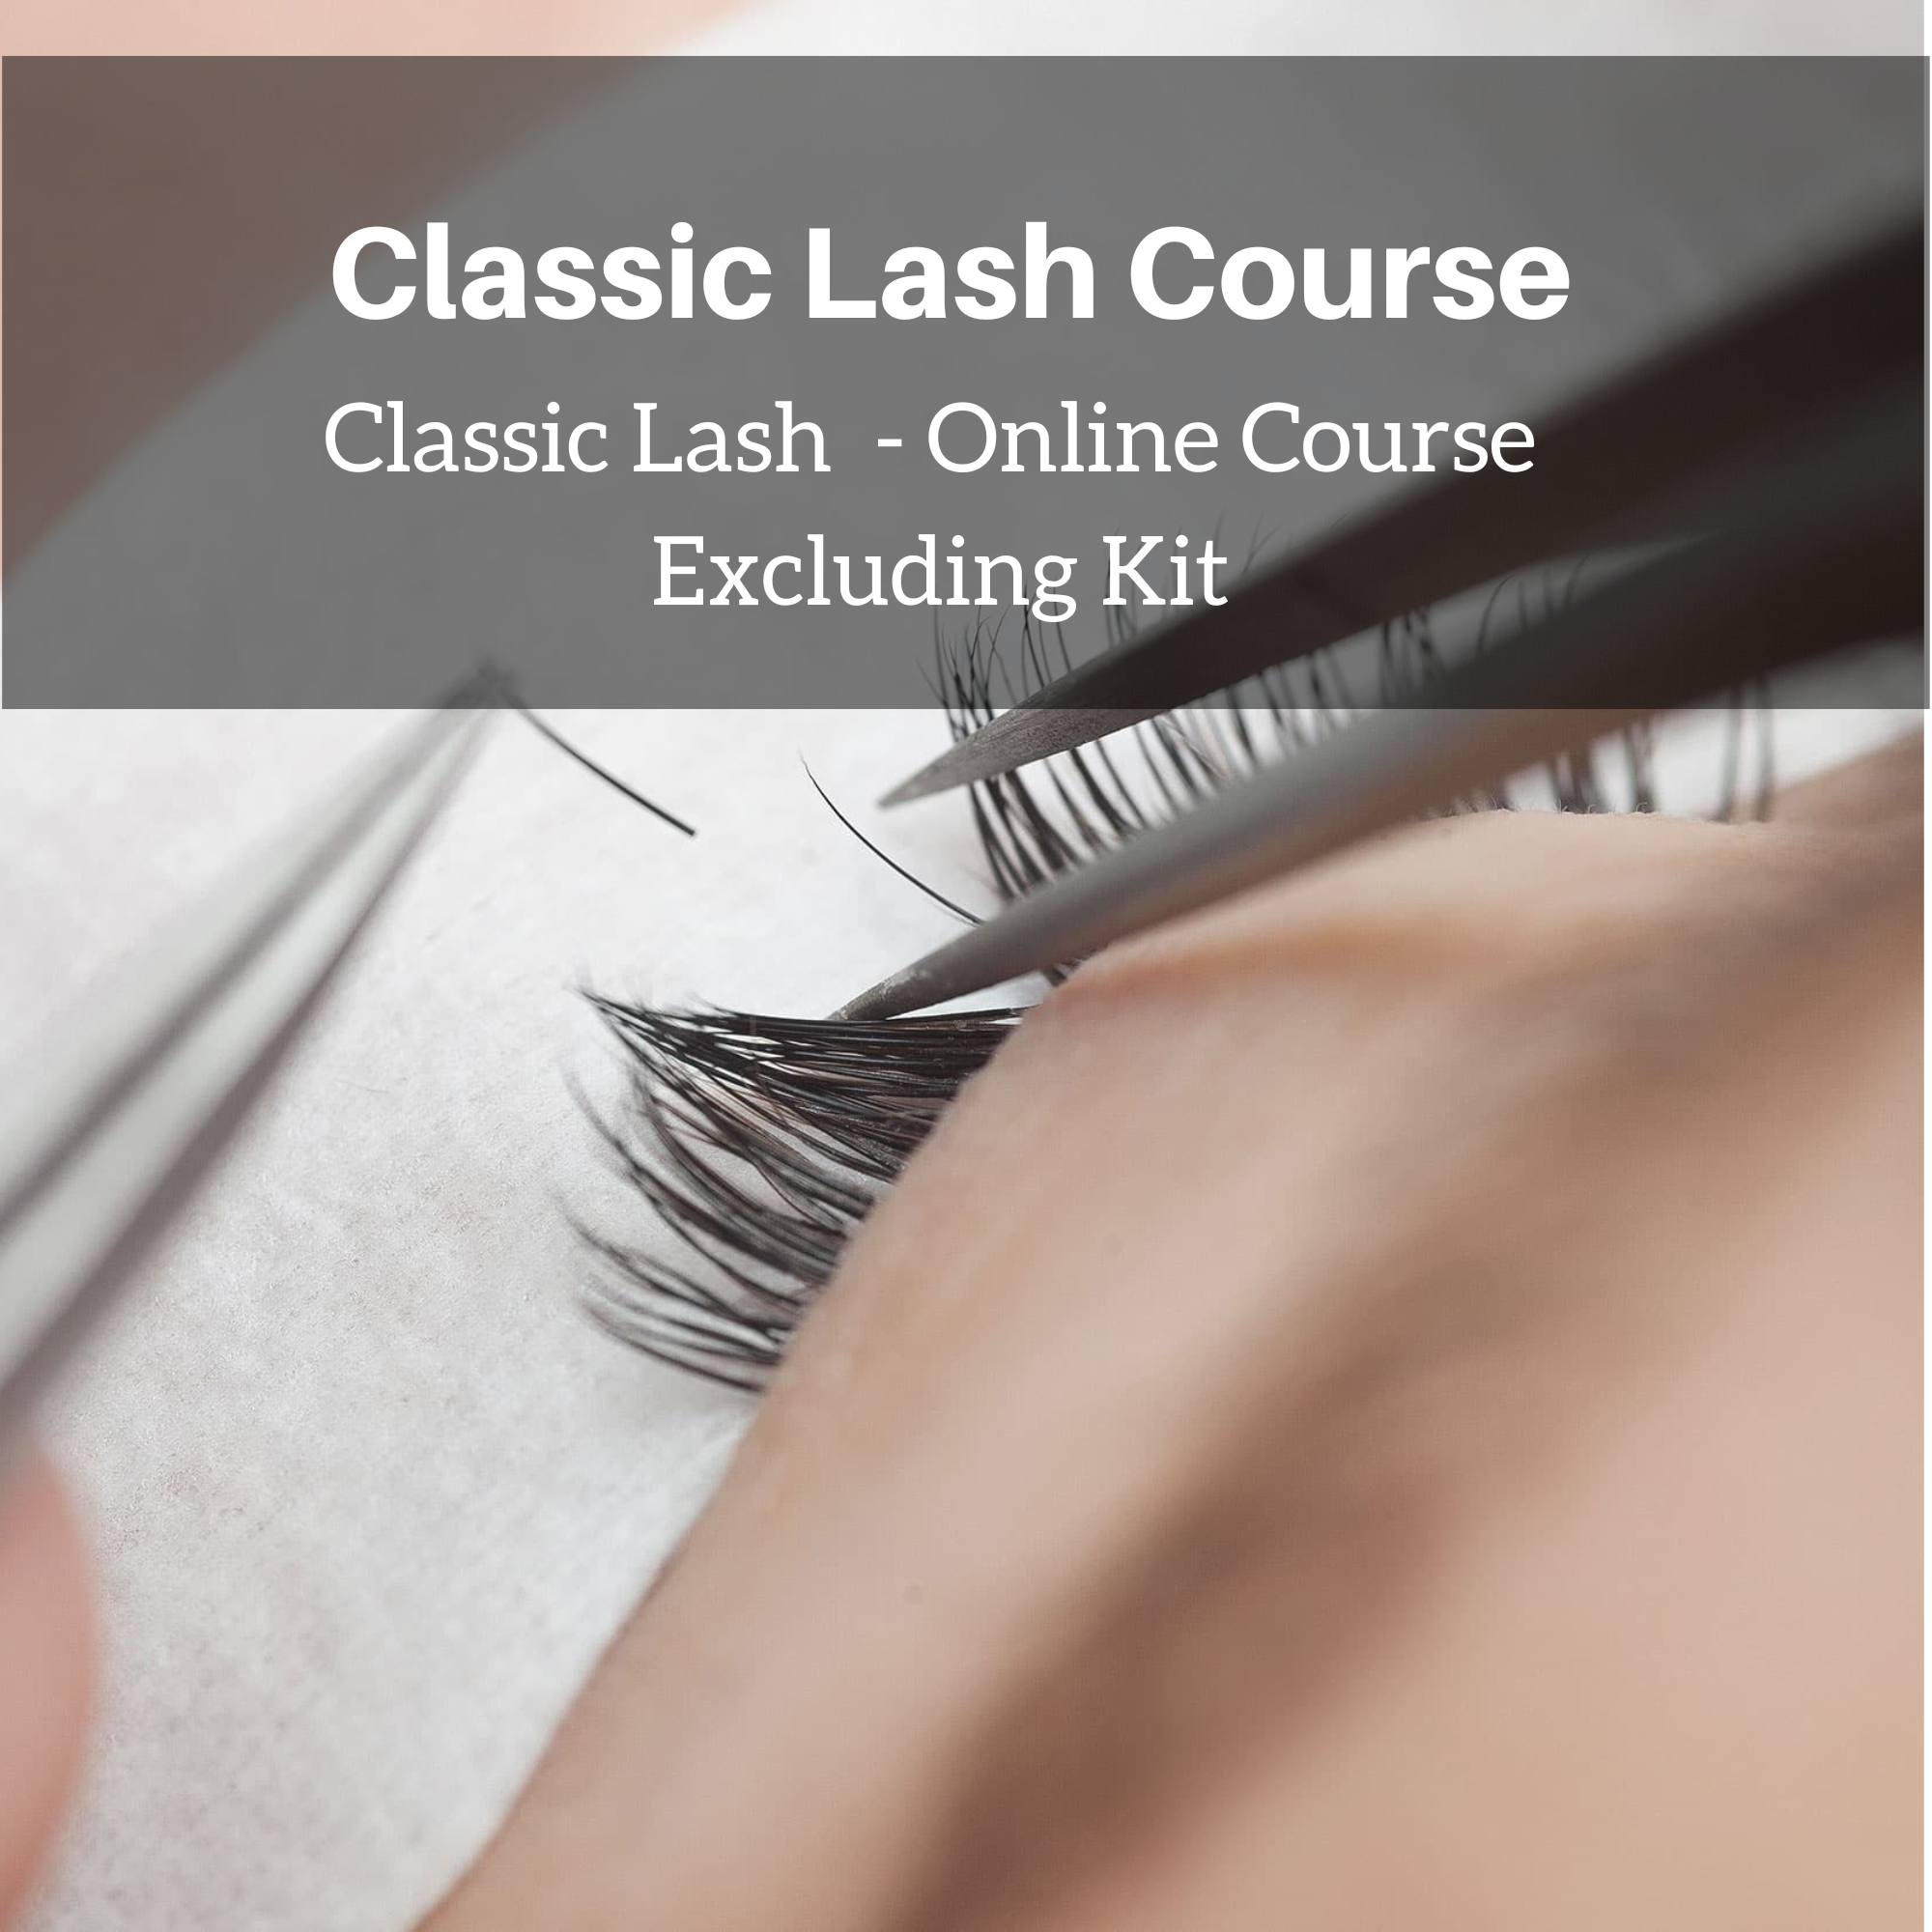 Classic Lash Extensions – Online Course